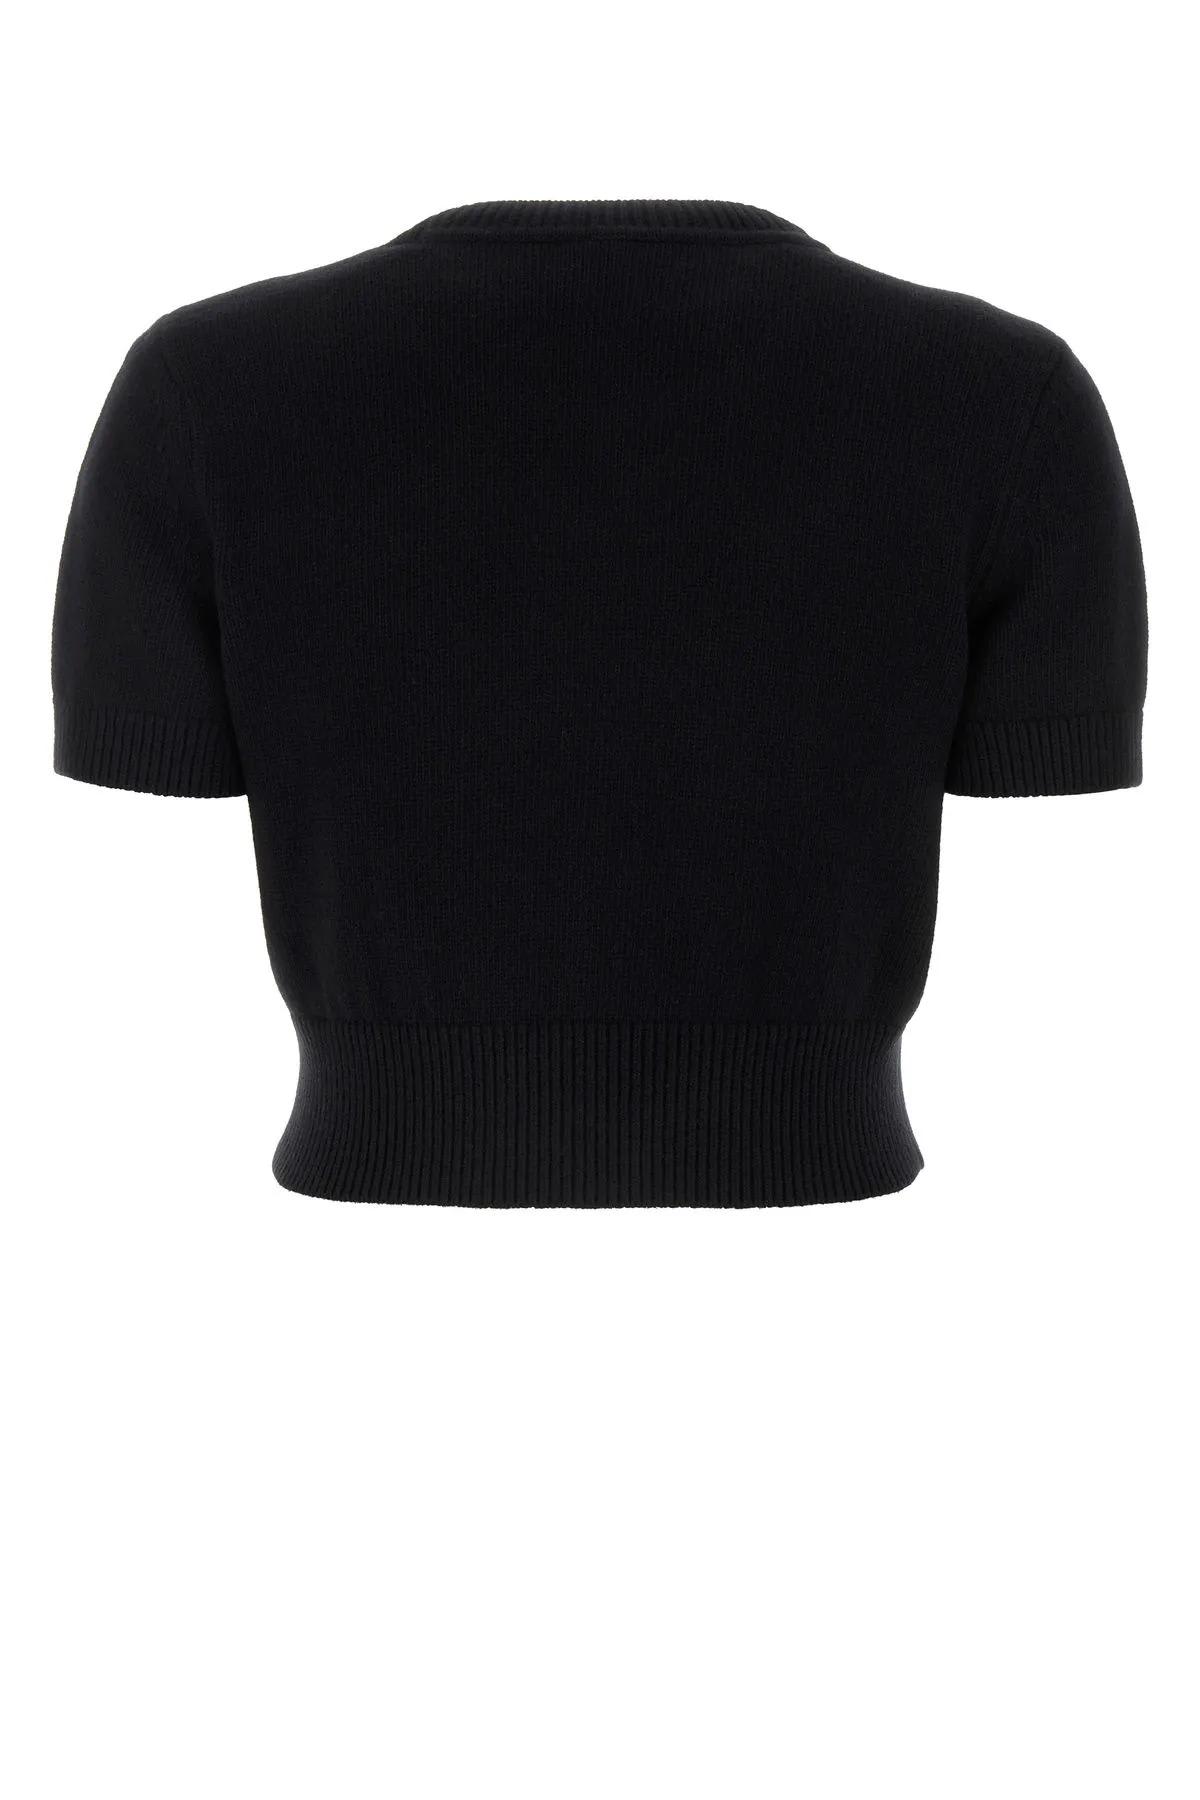 Shop Alexander Wang Black Cotton Blend Sweater